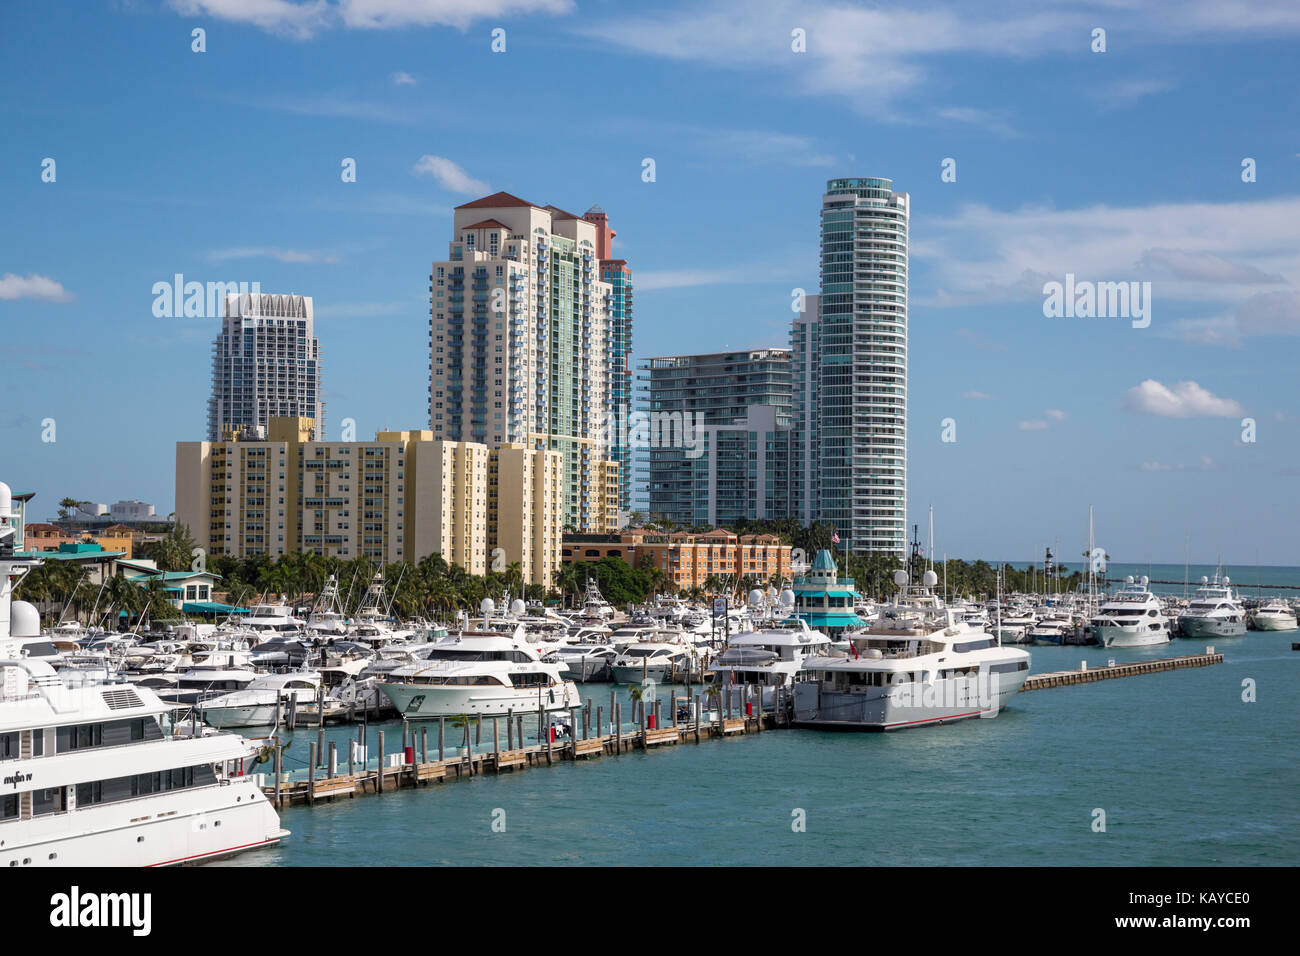 Miami Beach, en Floride. Bateaux de South Beach et des condominiums. Banque D'Images